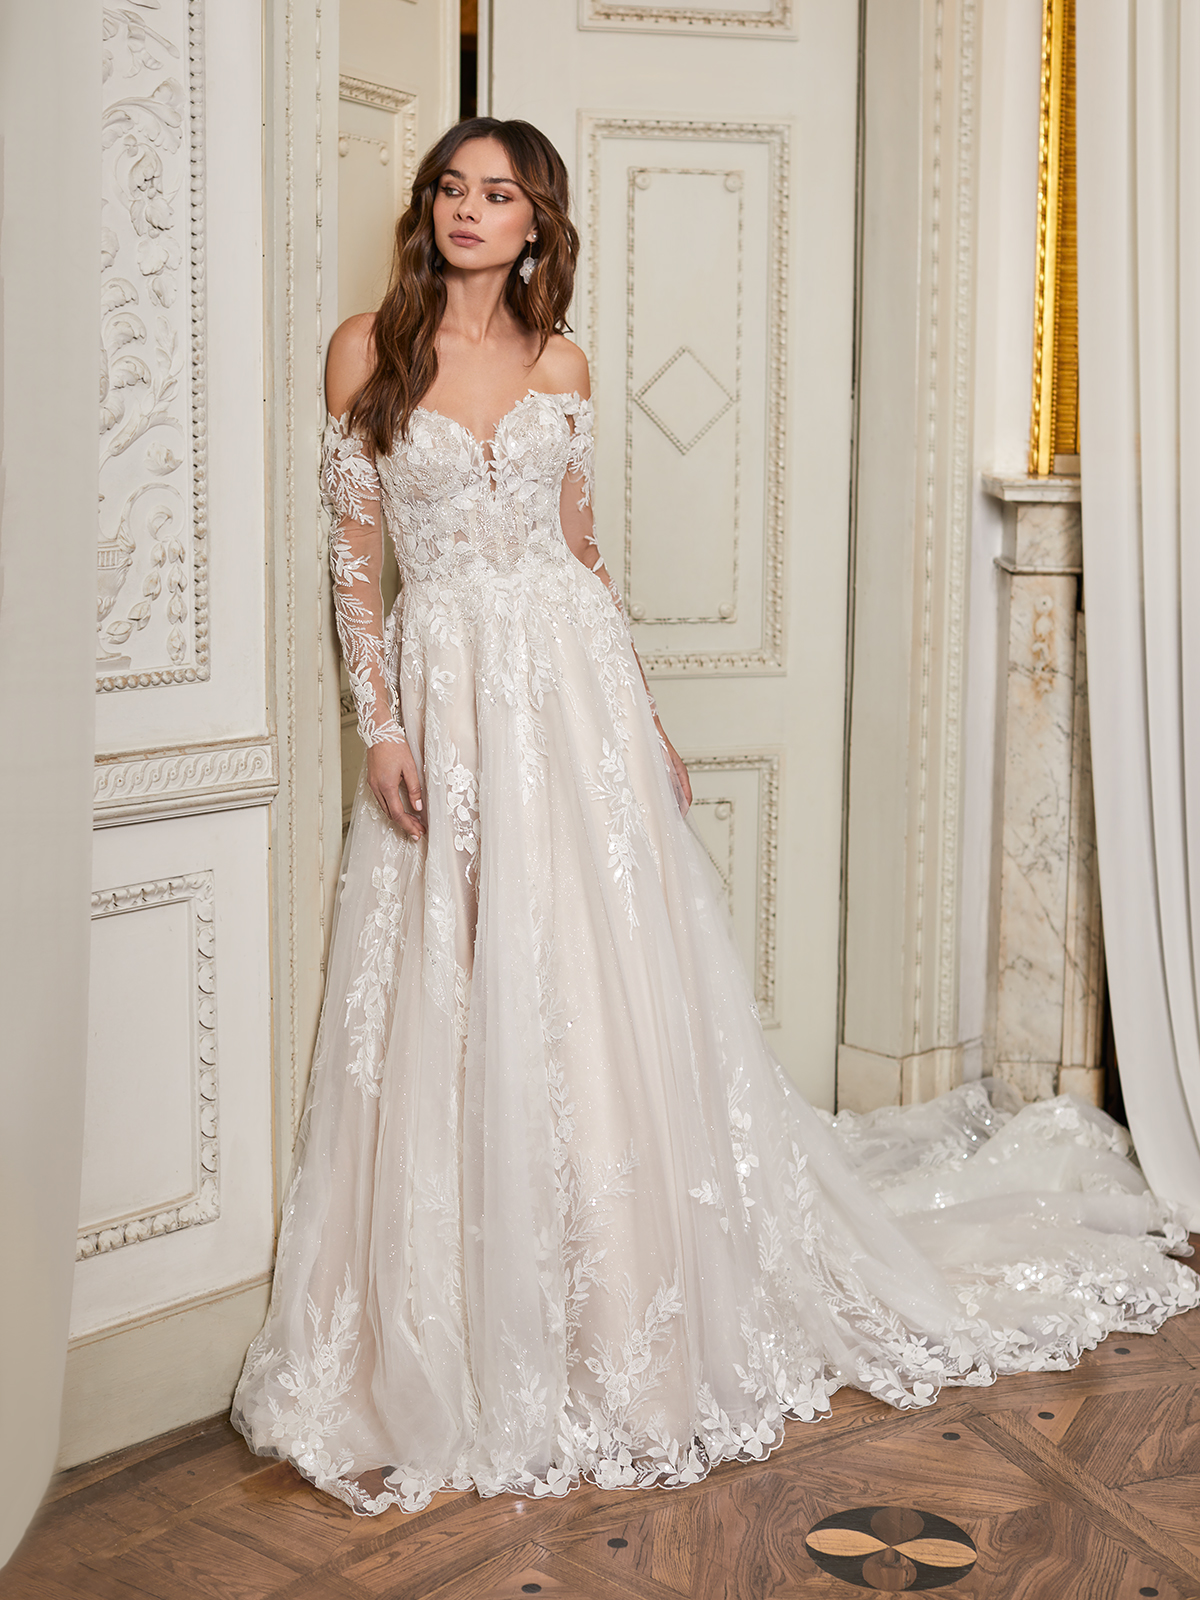 Elegant and Unique Structured Wedding Gowns – Pennsylvania Bride Magazine ®